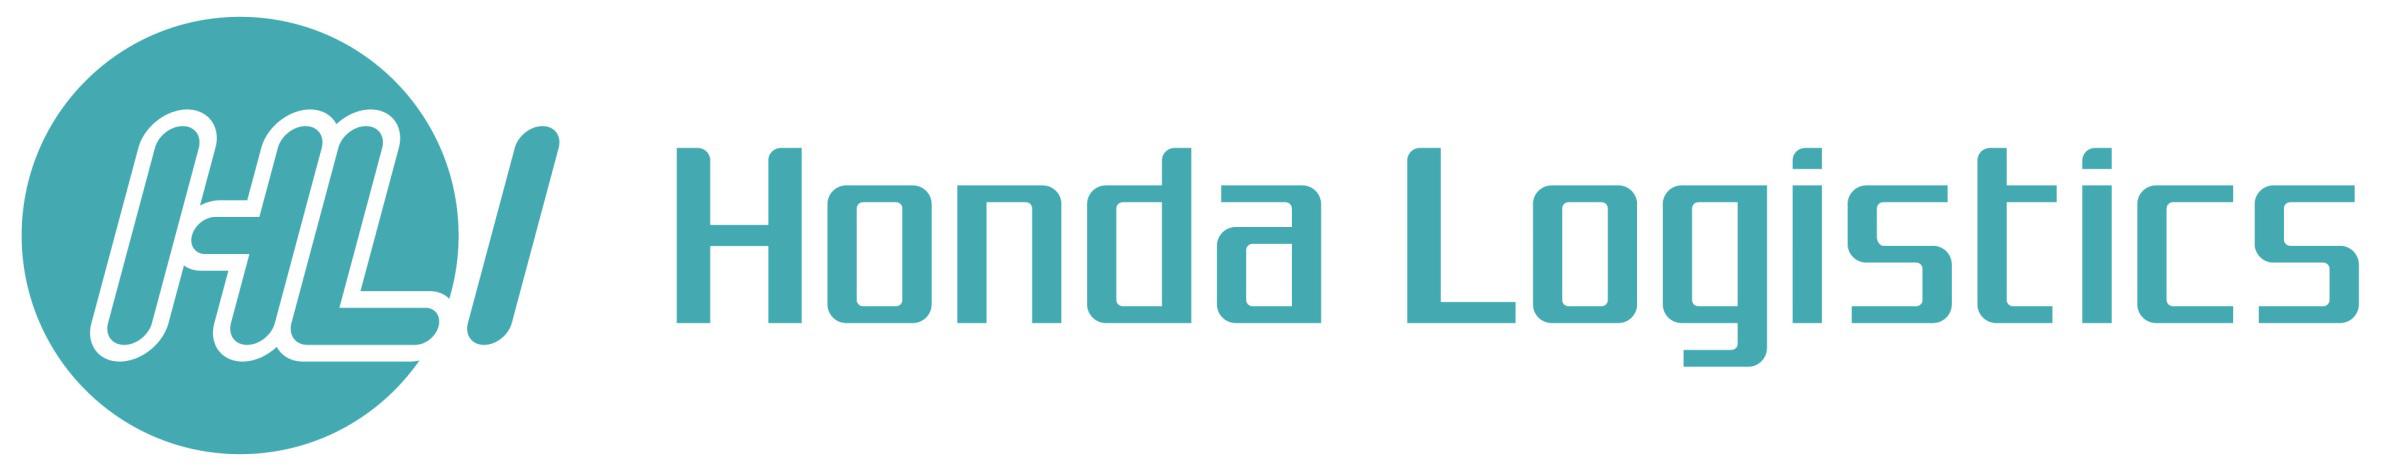 Honda Logistics_Logo